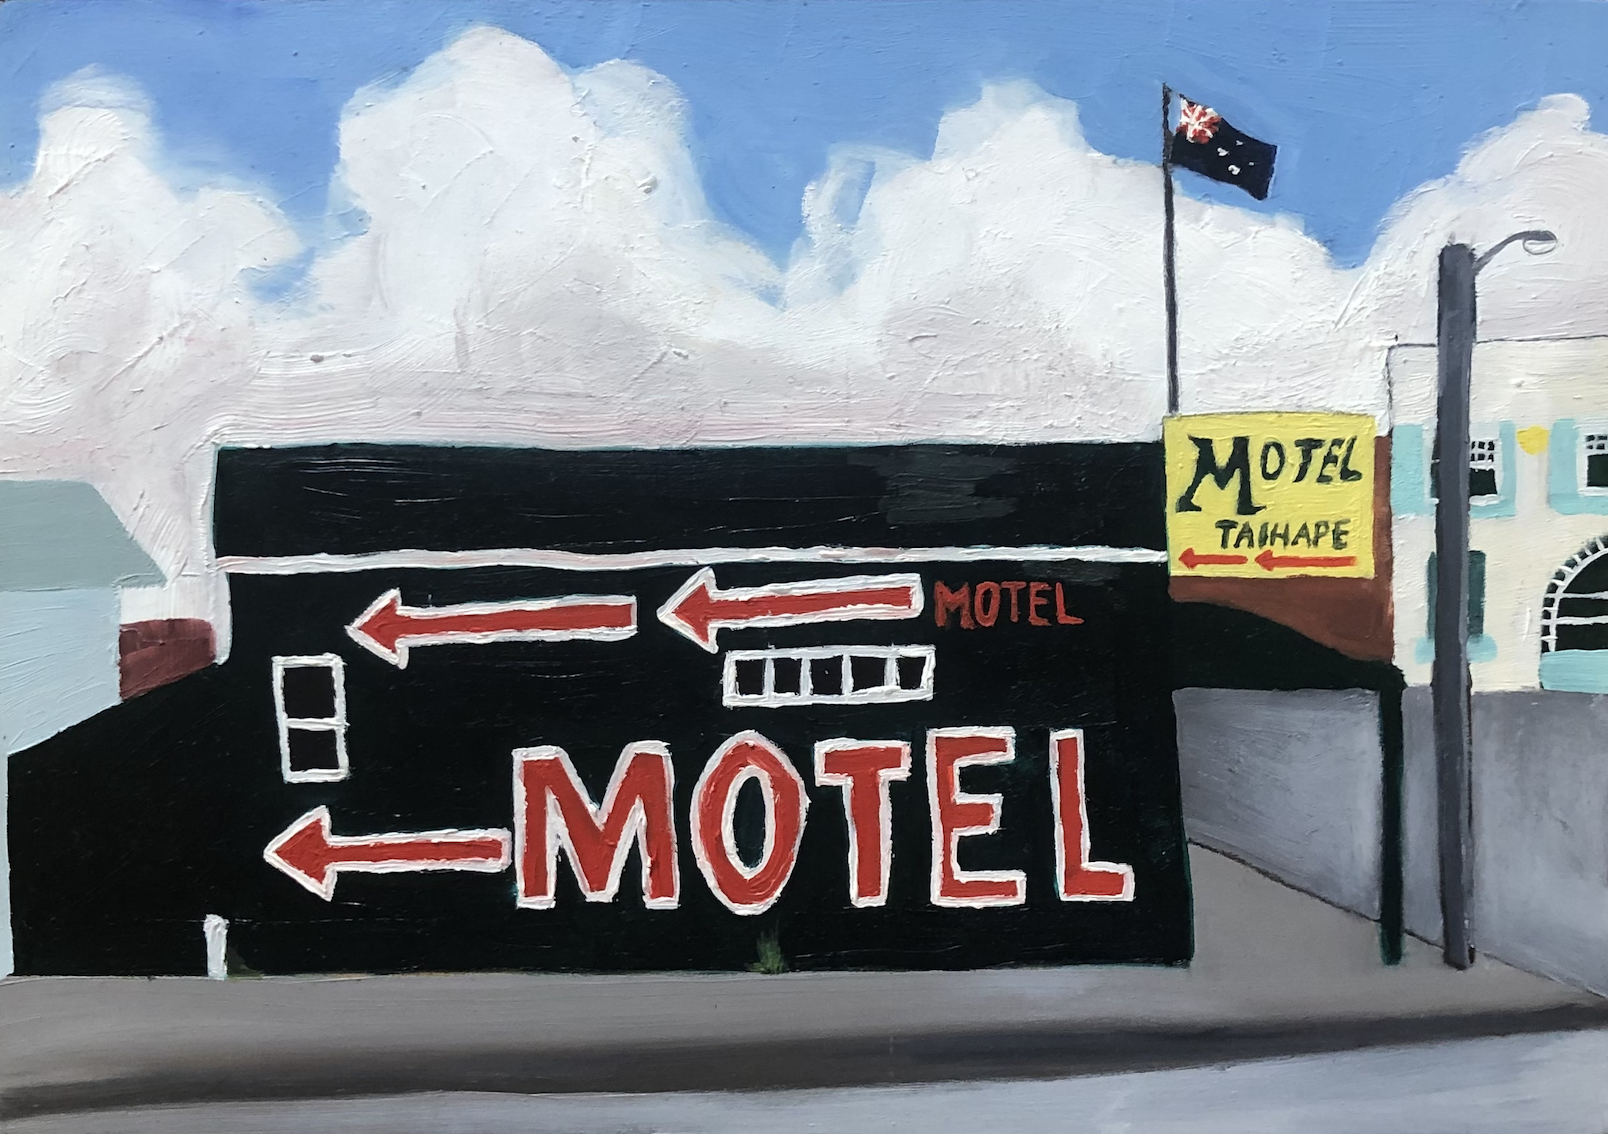 Motel Motel Motel